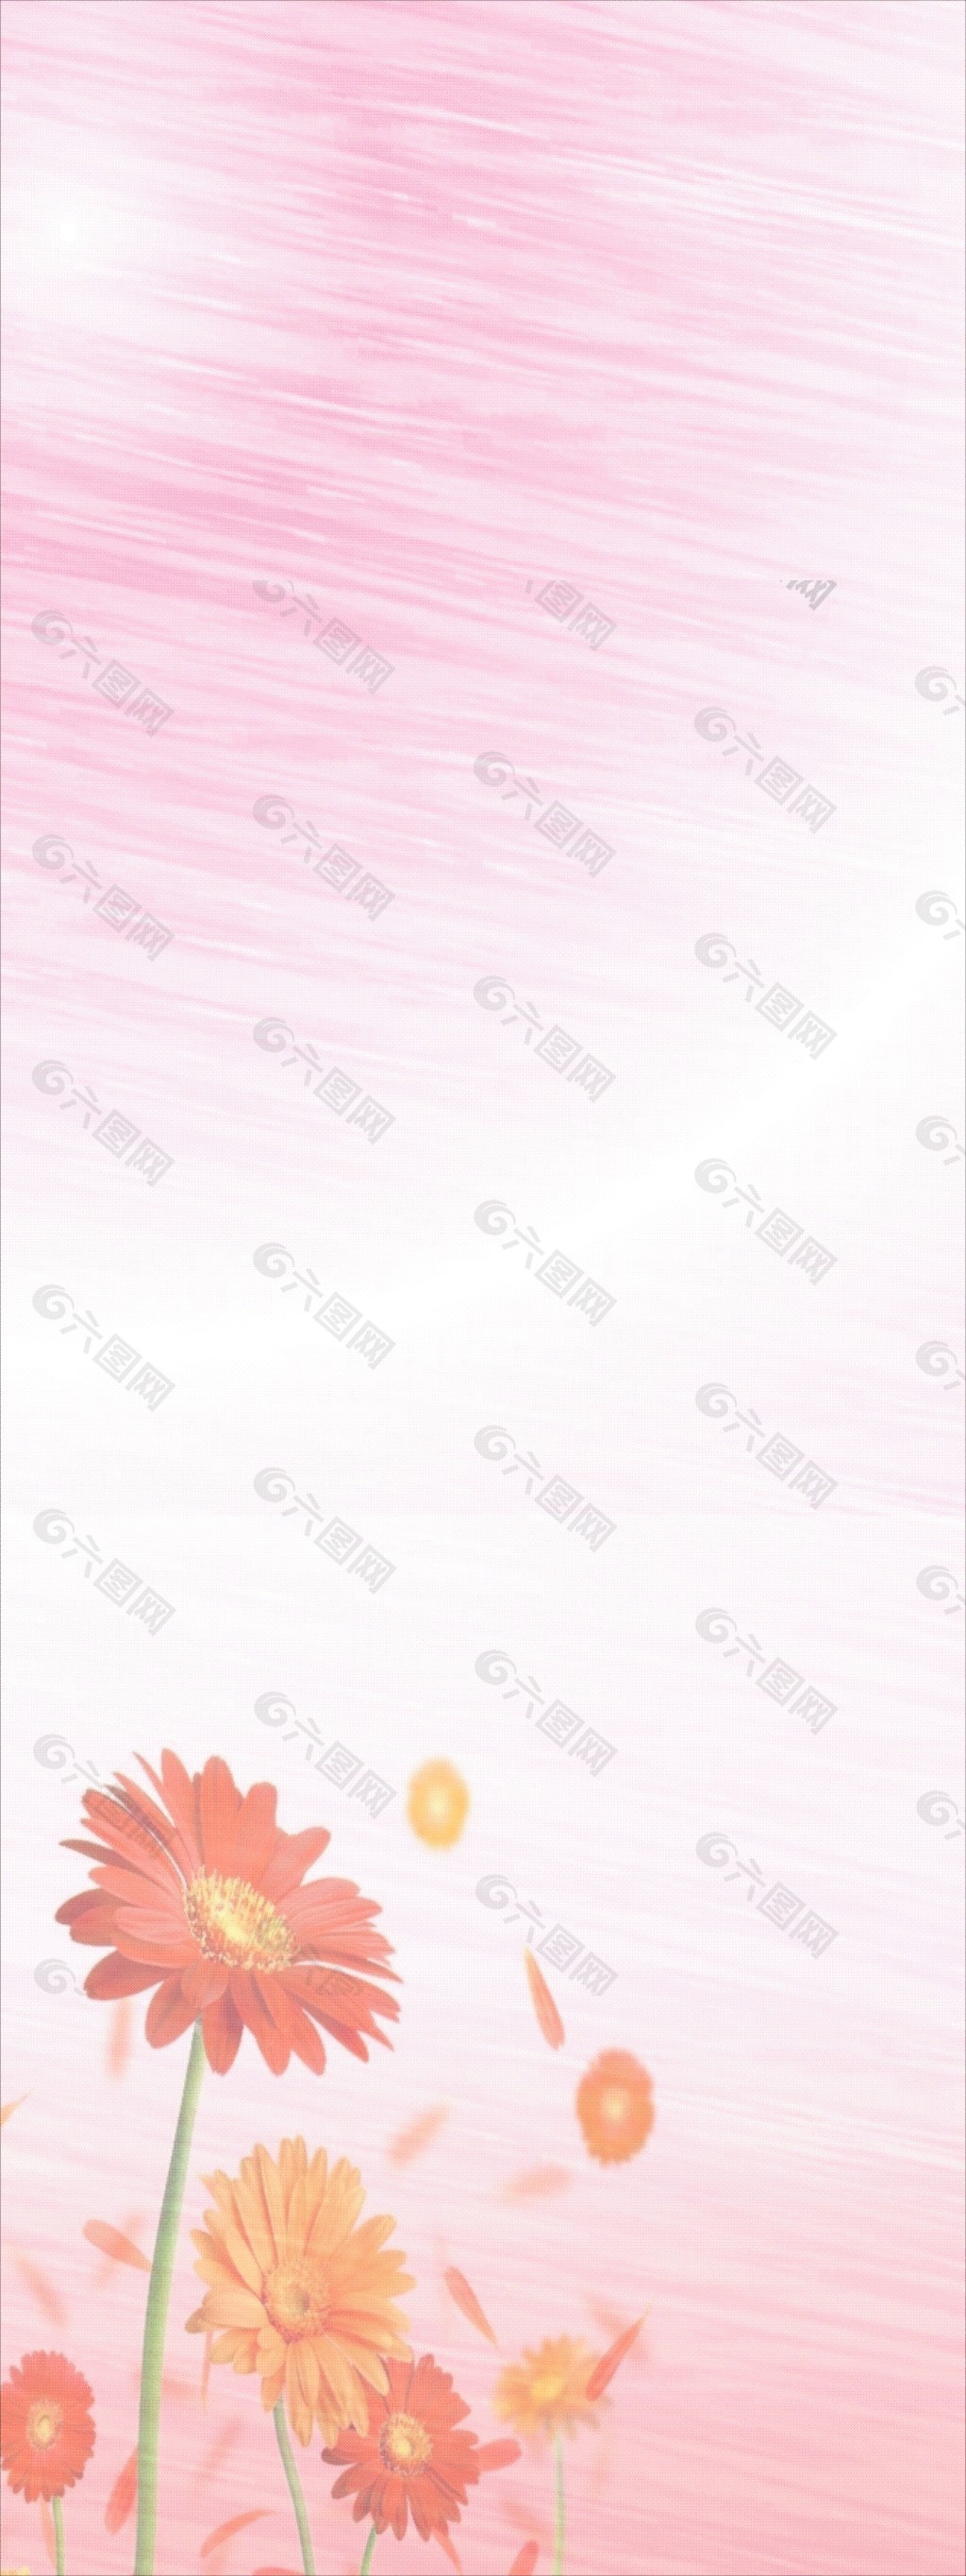 菊花粉红色背景